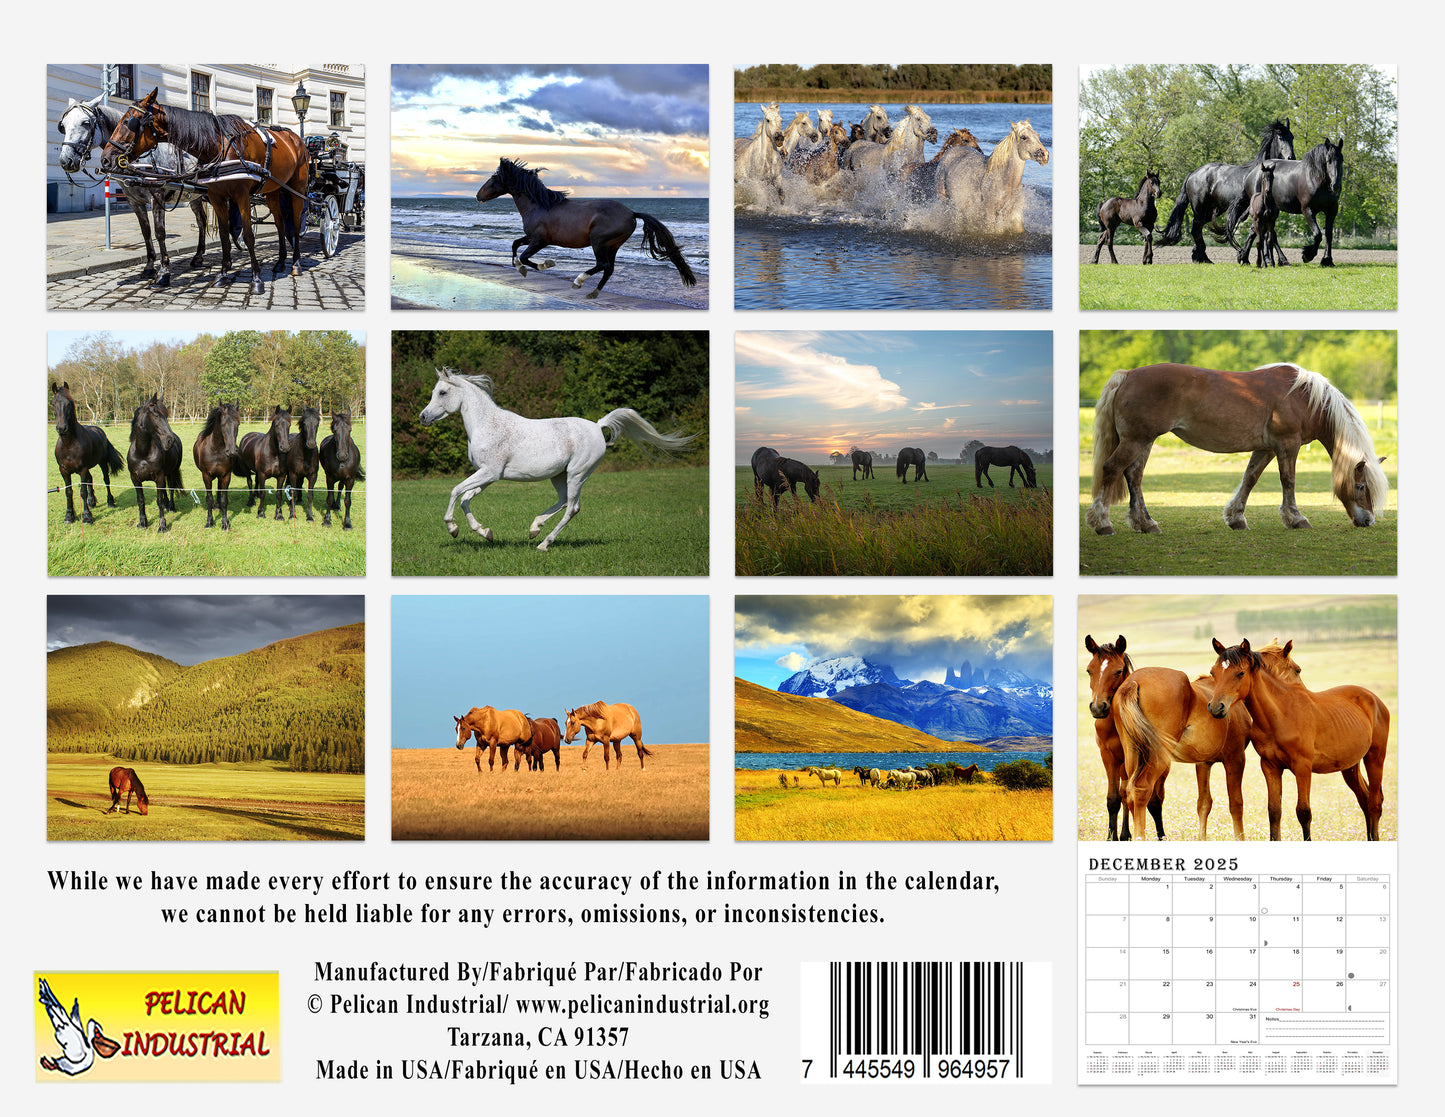 2025 Spiral-bound Wall Calendar (Horses) - 12 Months Desktop/Wall Calendar/Planner